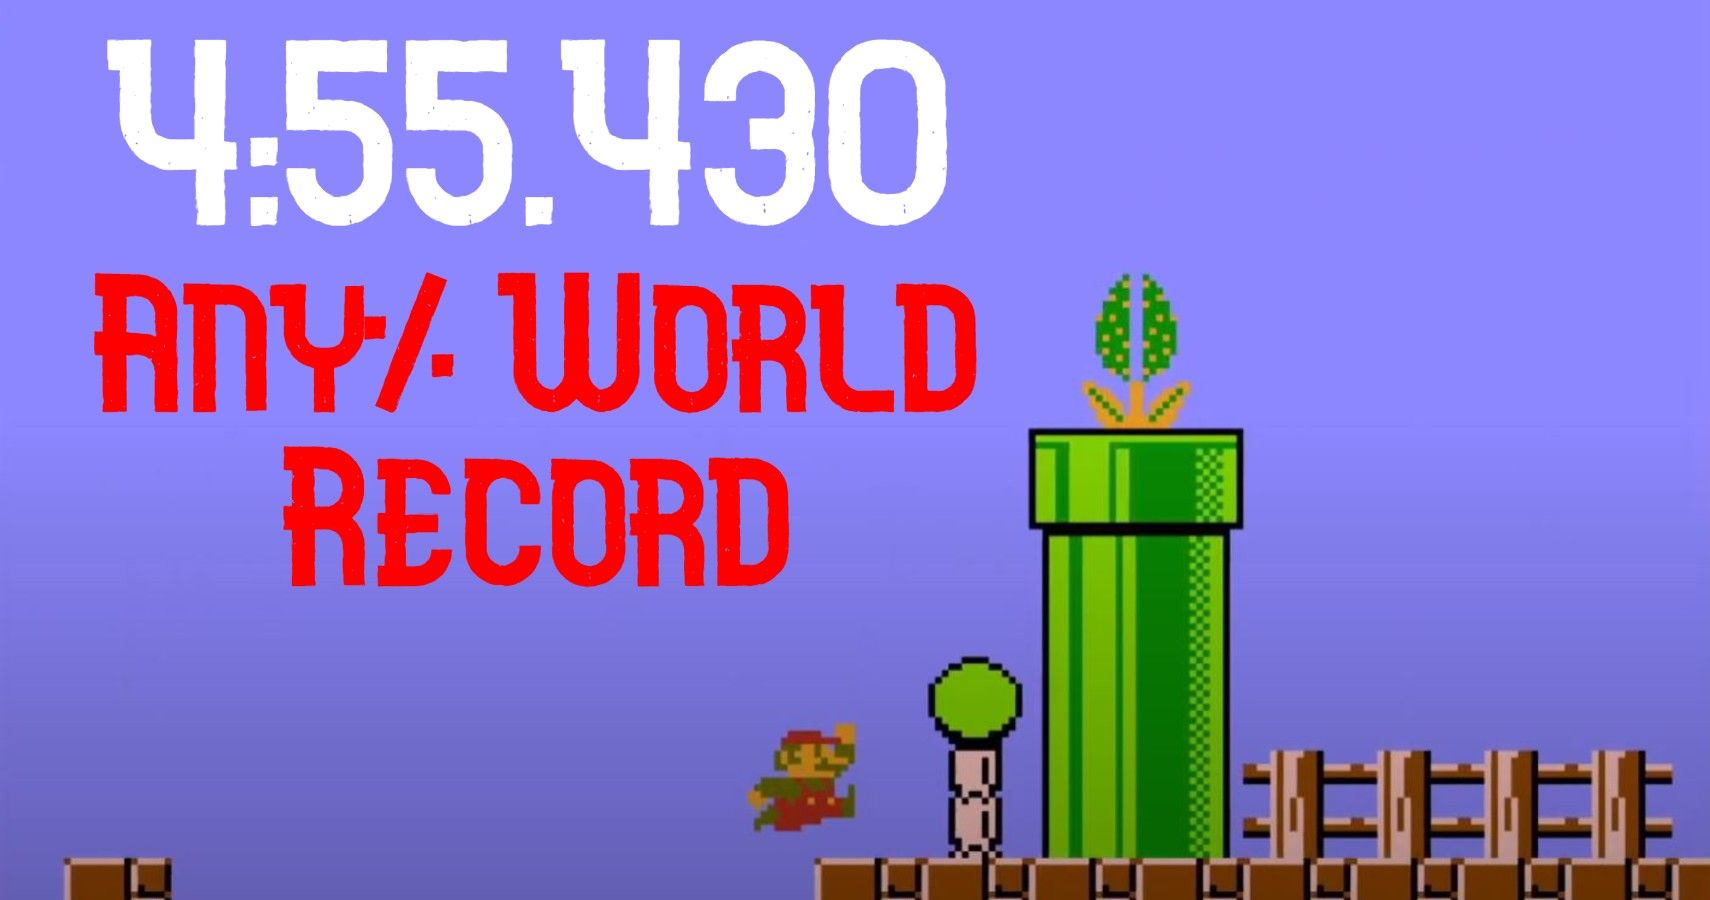 World Record Progression: Super Mario Bros